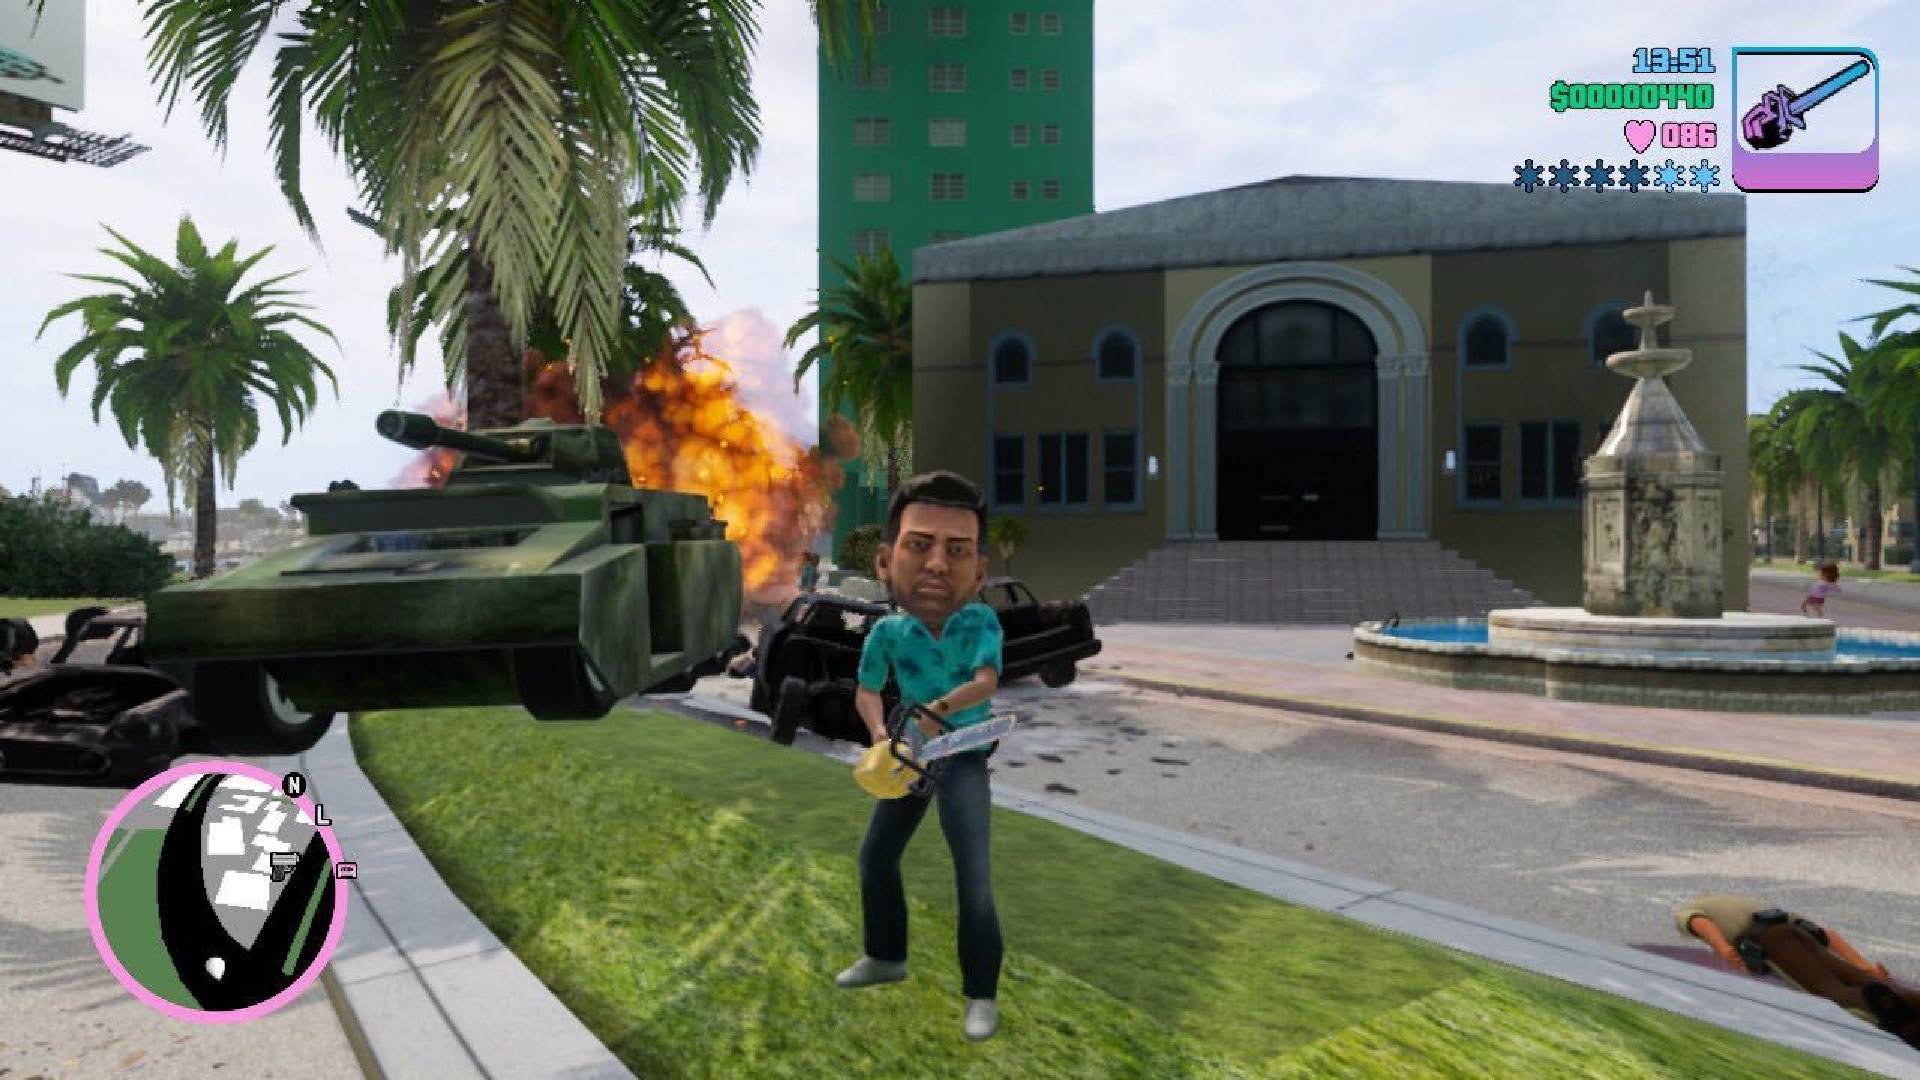 アロハシャツを着た男性キャラクターがチェーンソーを持って燃える戦車の前に立つ